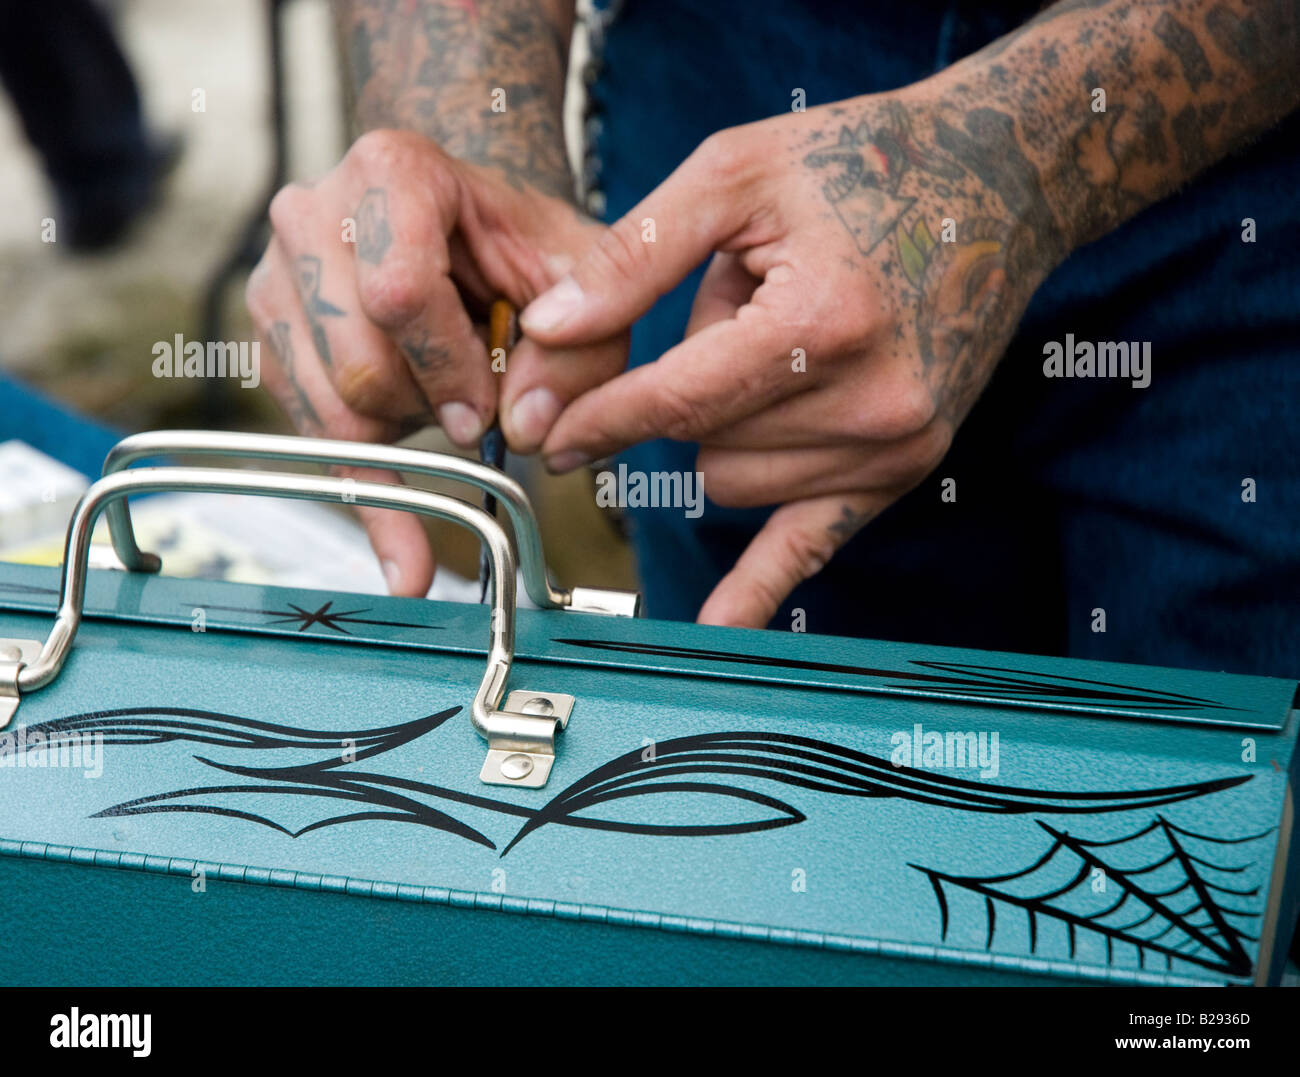 Man painting broche personnalisée bandes sur une boîte à outils Banque D'Images